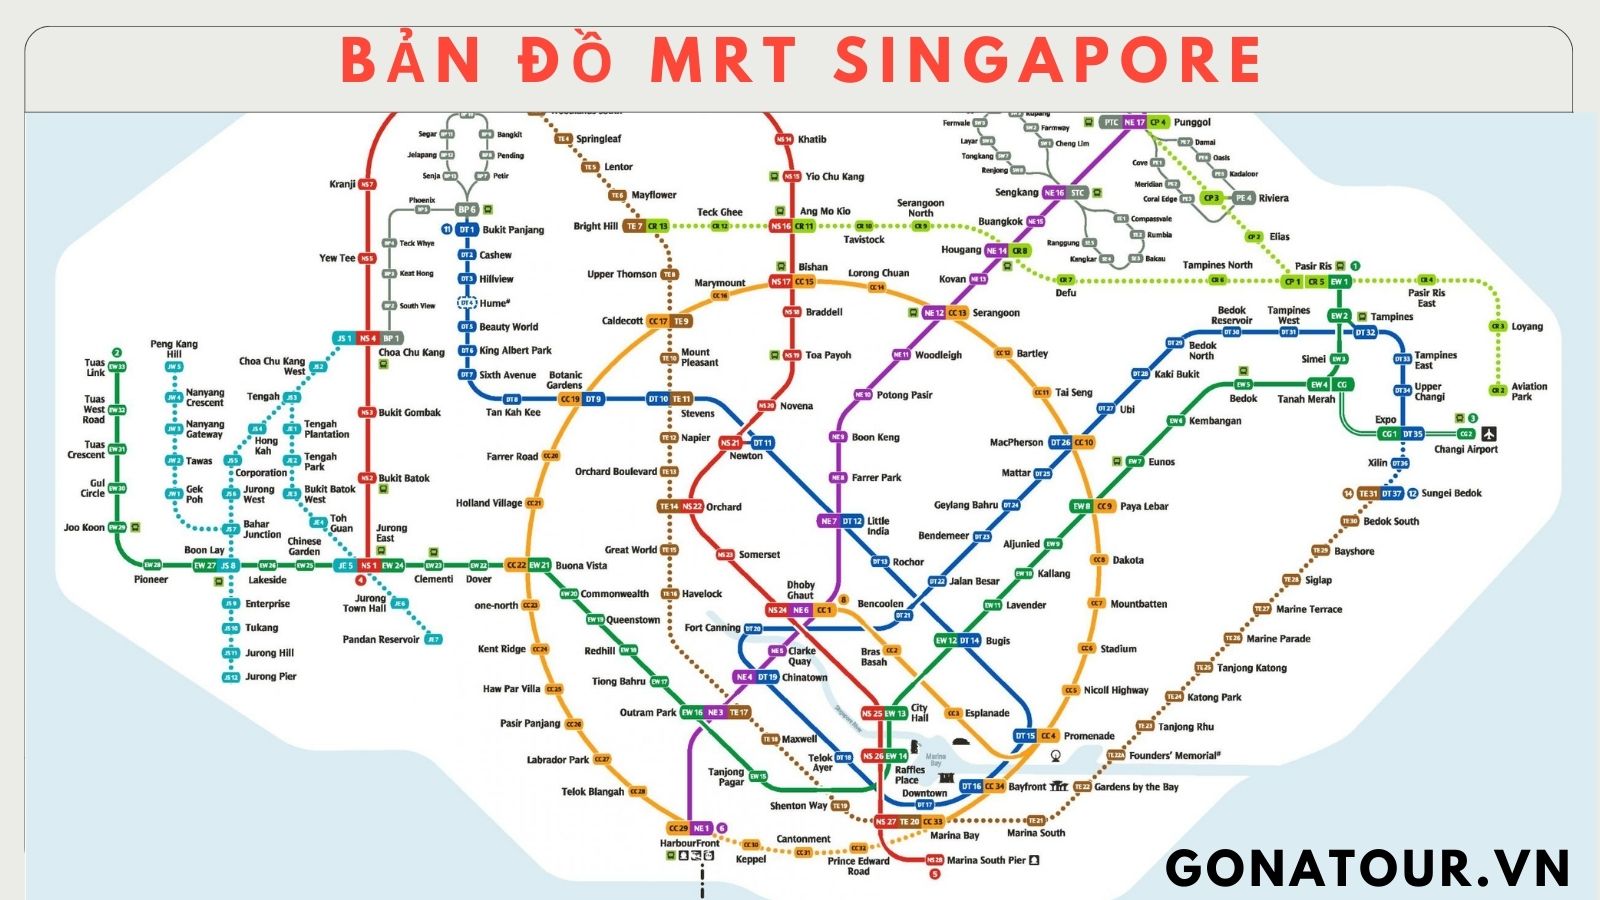 Bản đồ Singapore thú vị chắc chắn sẽ làm bạn thích thú và tò mò. Với những thông tin quan trọng về du lịch, món ăn ngon, cửa hàng thời trang độc đáo, các sự kiện nổi bật và nhiều hơn thế nữa, bạn sẽ tìm thấy mọi thứ đều có trên bản đồ này. Hãy khám phá Singapore theo cách của riêng bạn!